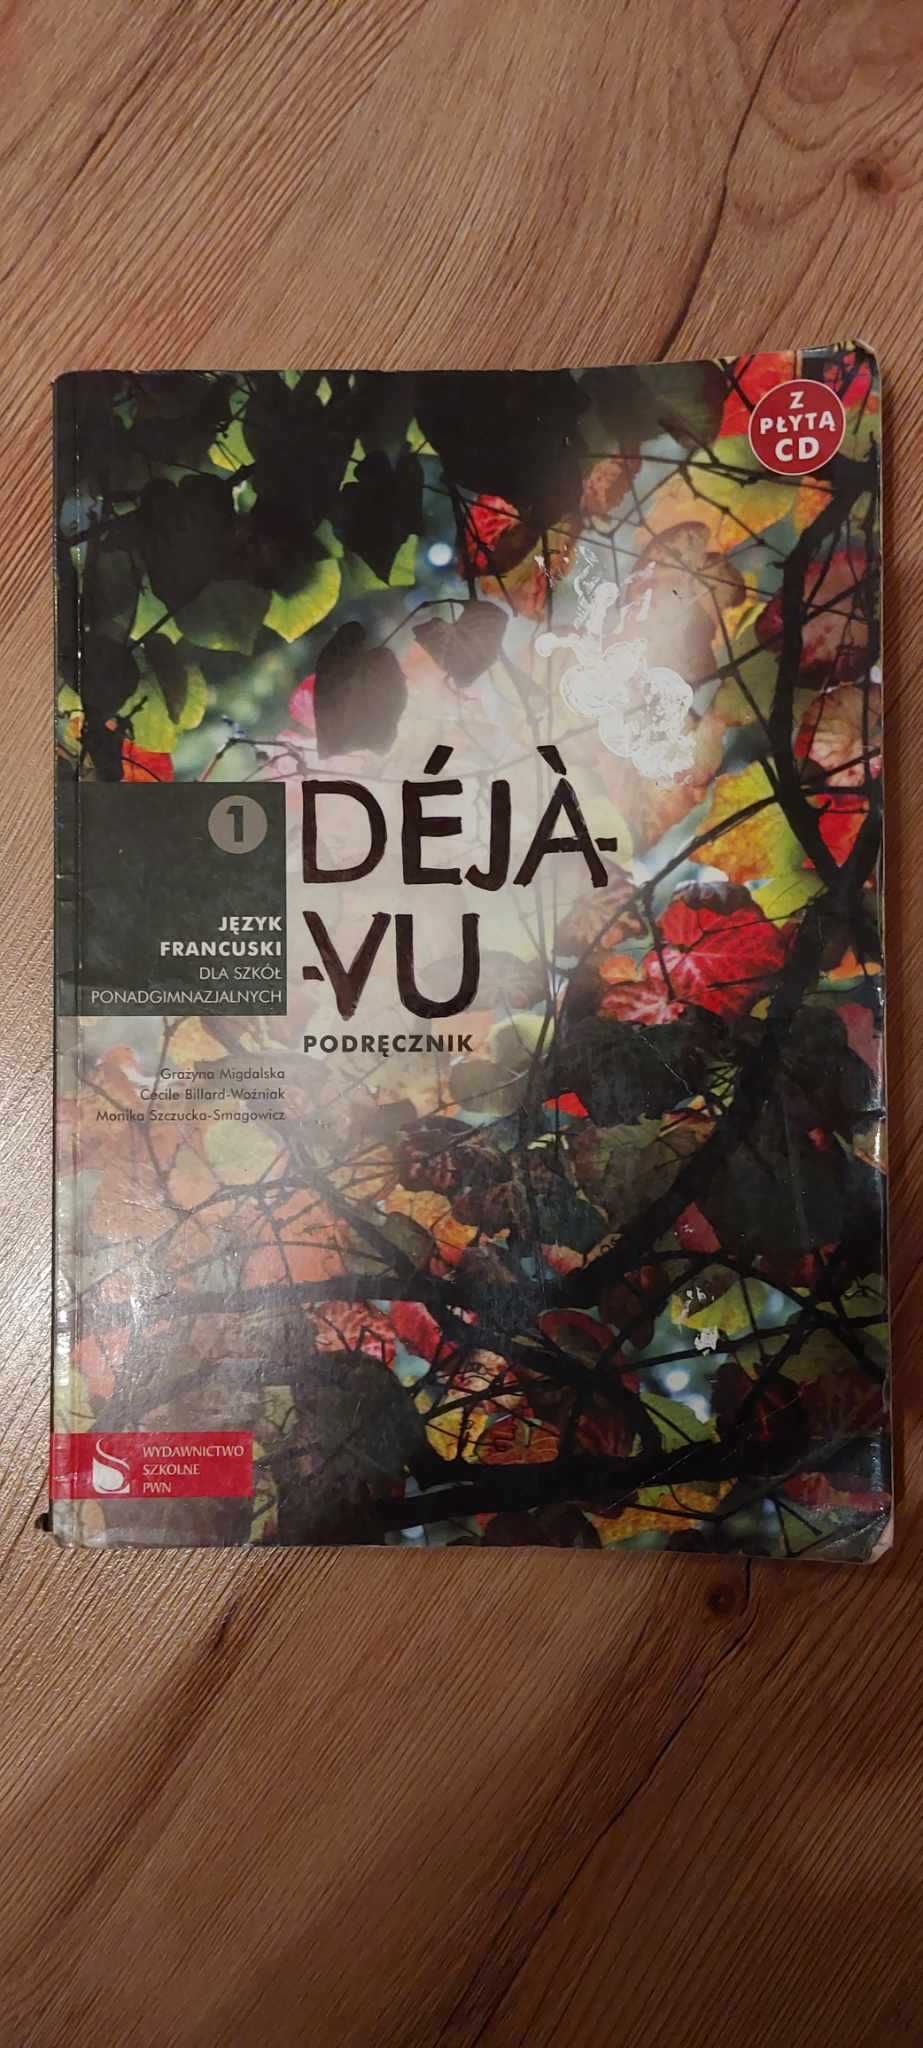 Podręcznik Deja-vu
język francuski